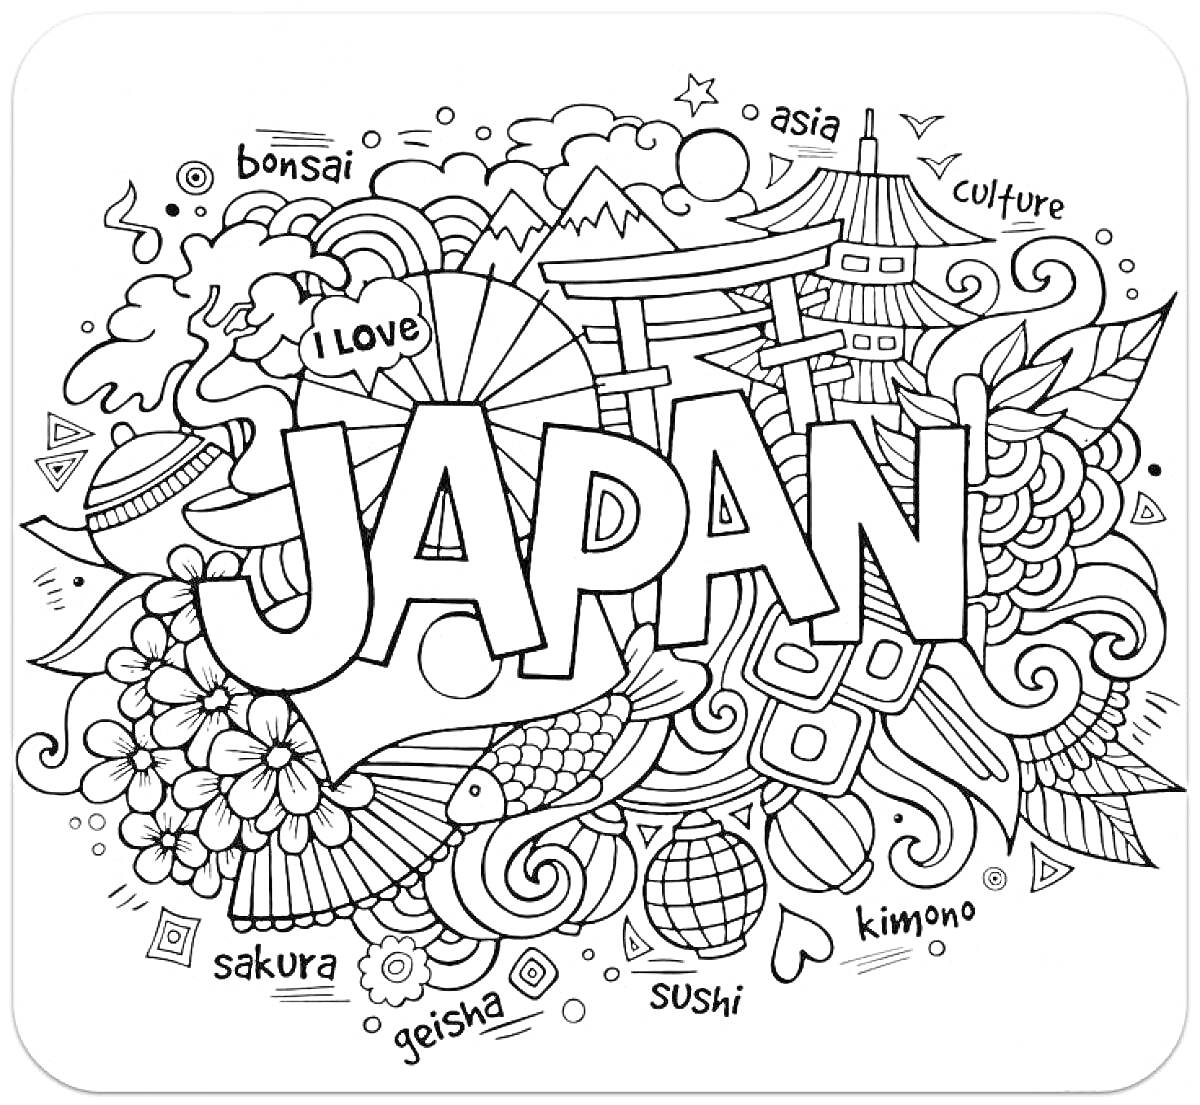 Япония с традиционными элементами - веер, гейша, суши, сакура, пагода, гора Фудзи, бонсай, фонарик